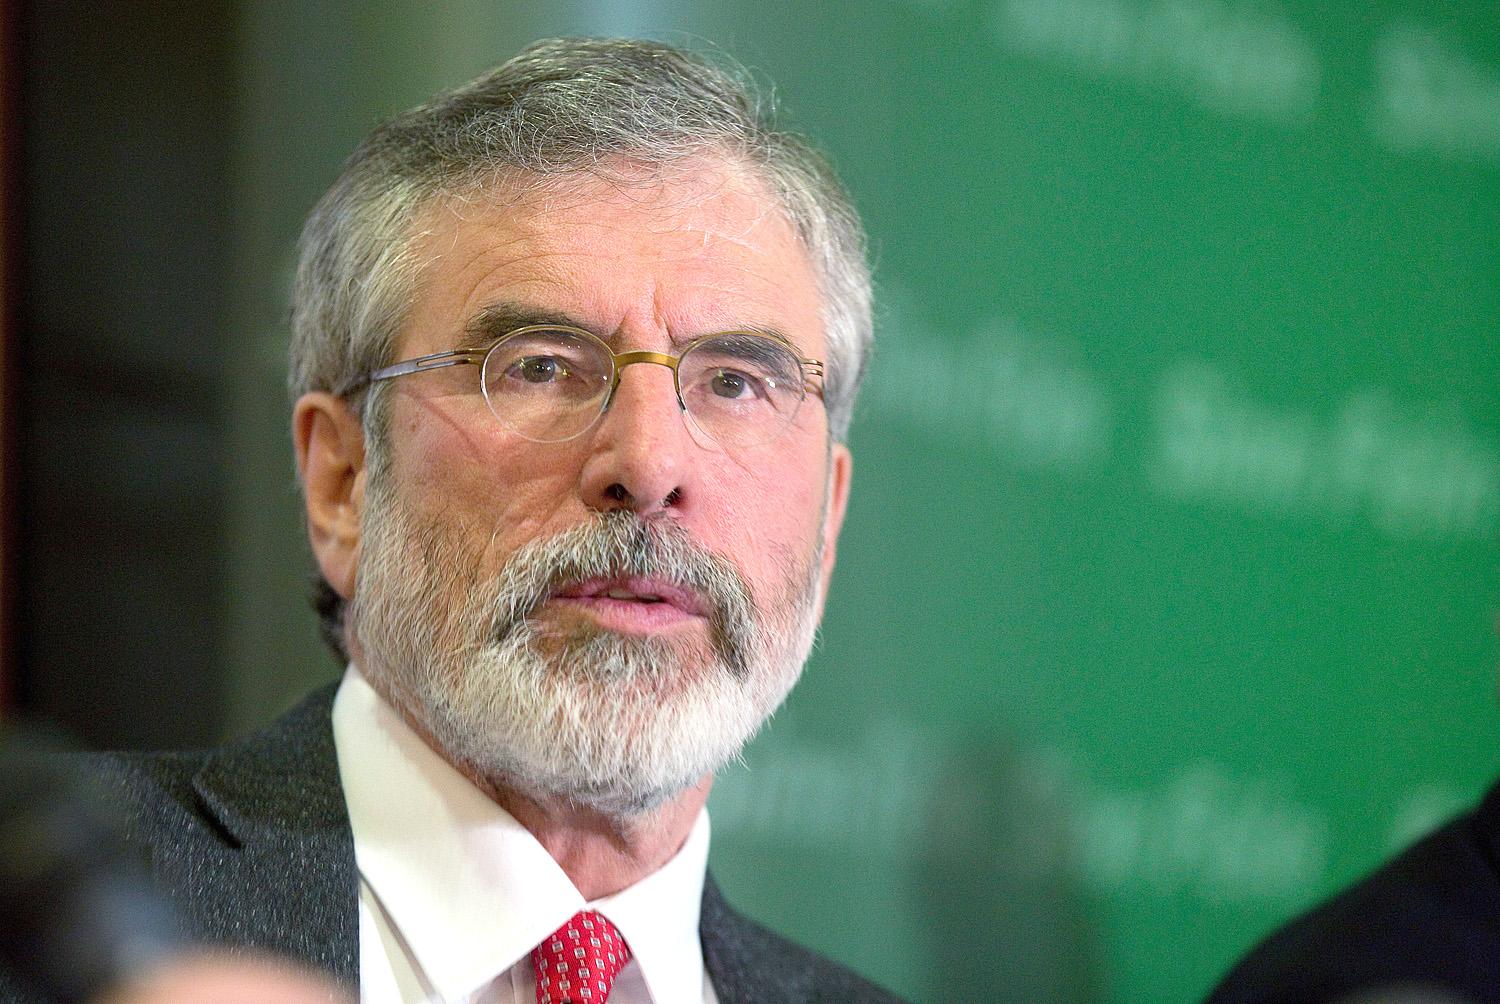 Adams békülékeny hangot ütött meg, de a Sinn Féin fenyegetőzik